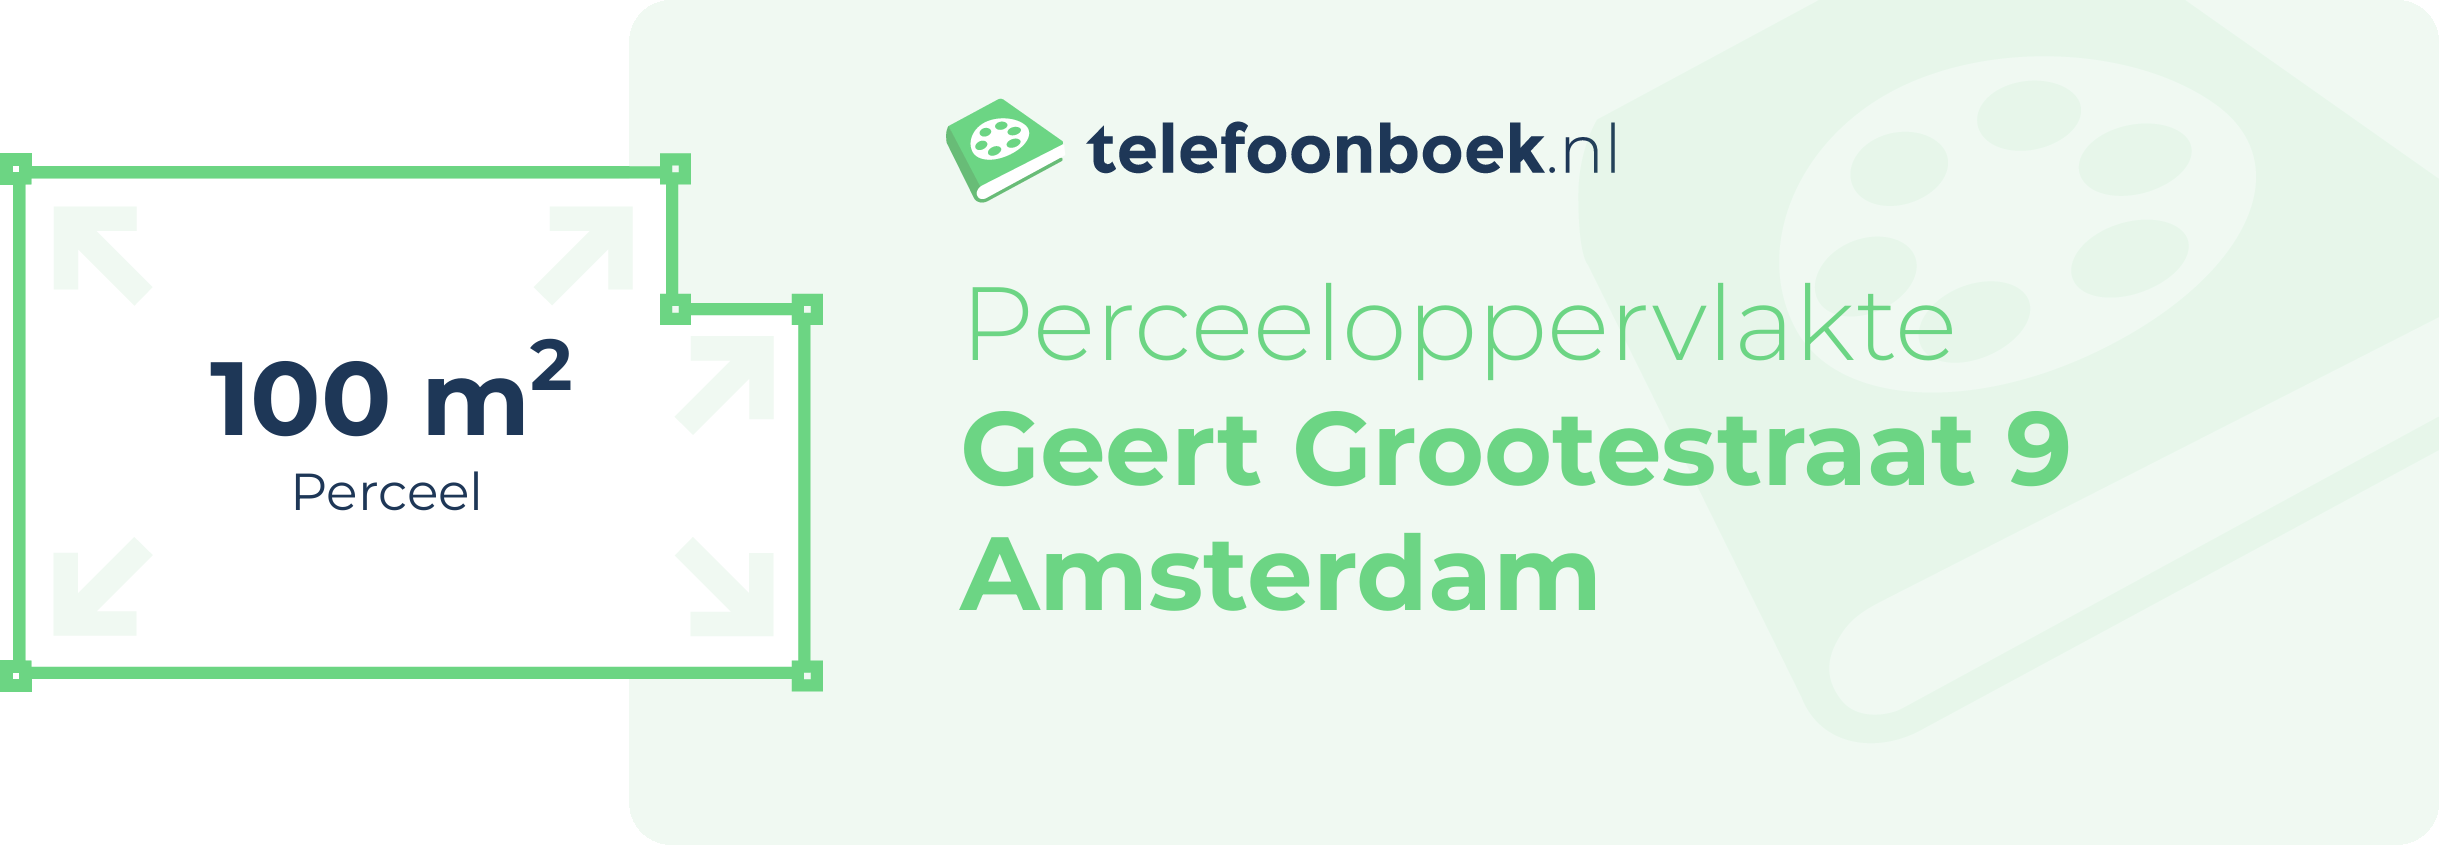 Perceeloppervlakte Geert Grootestraat 9 Amsterdam